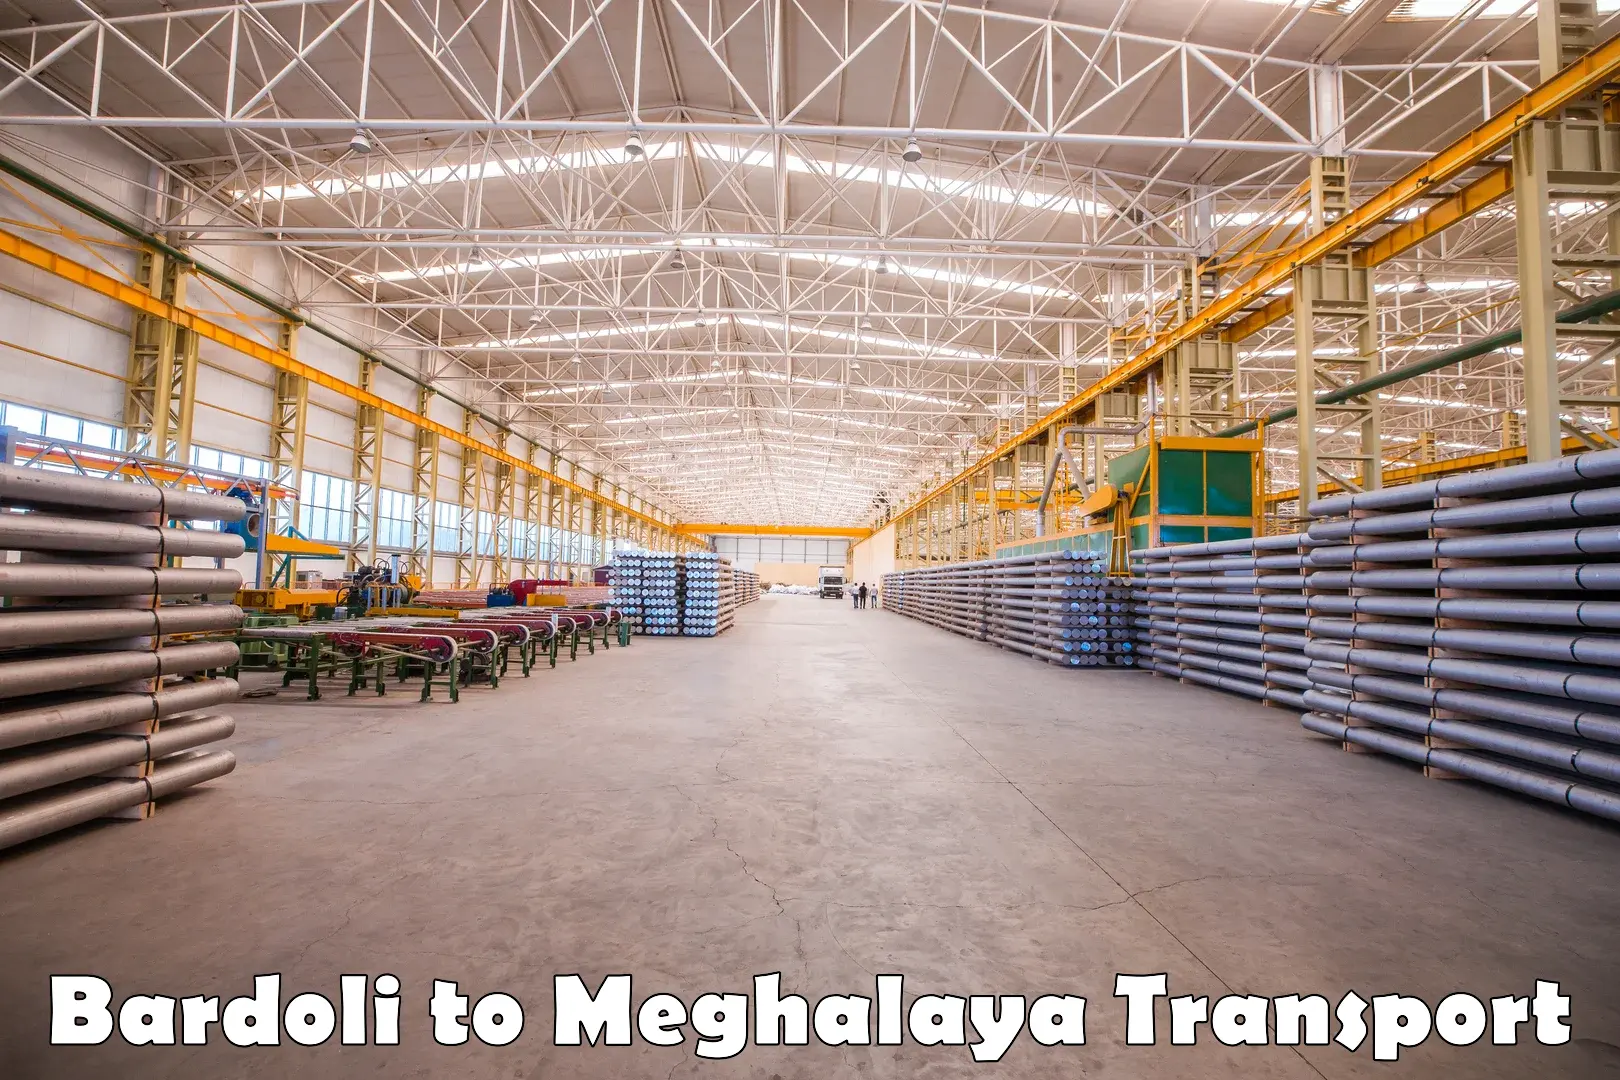 Daily parcel service transport Bardoli to Meghalaya